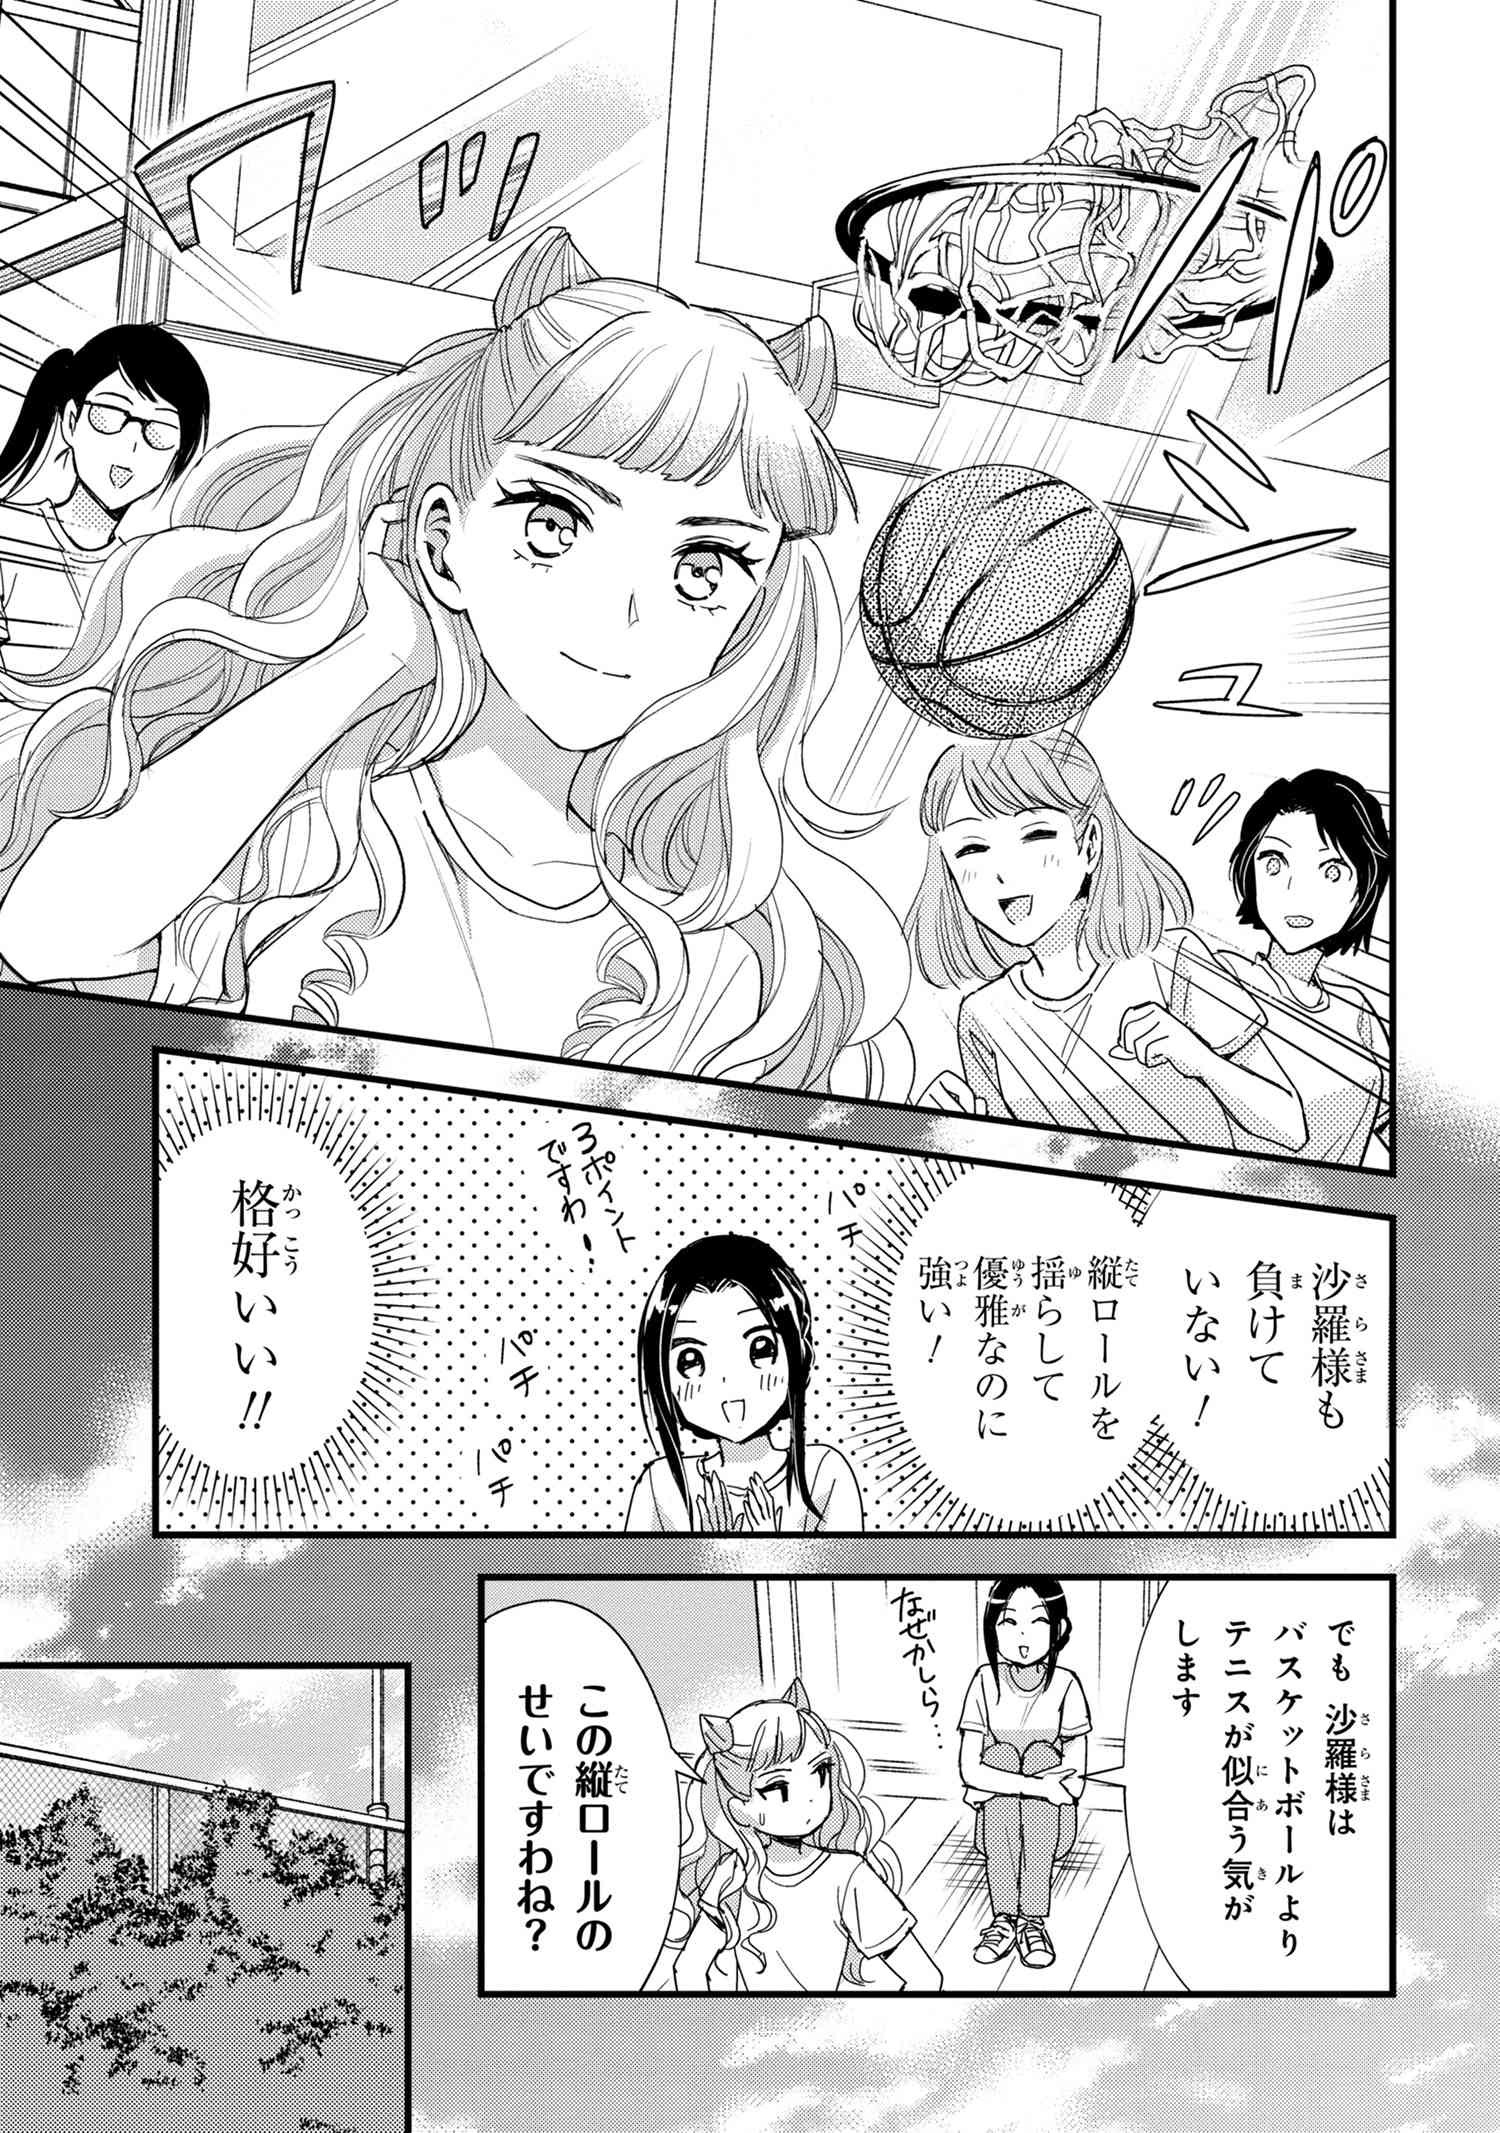 Reiko no Fuugi Akuyaku Reijou to Yobarete imasu ga, tada no Binbou Musume desu - Chapter 13-2 - Page 2